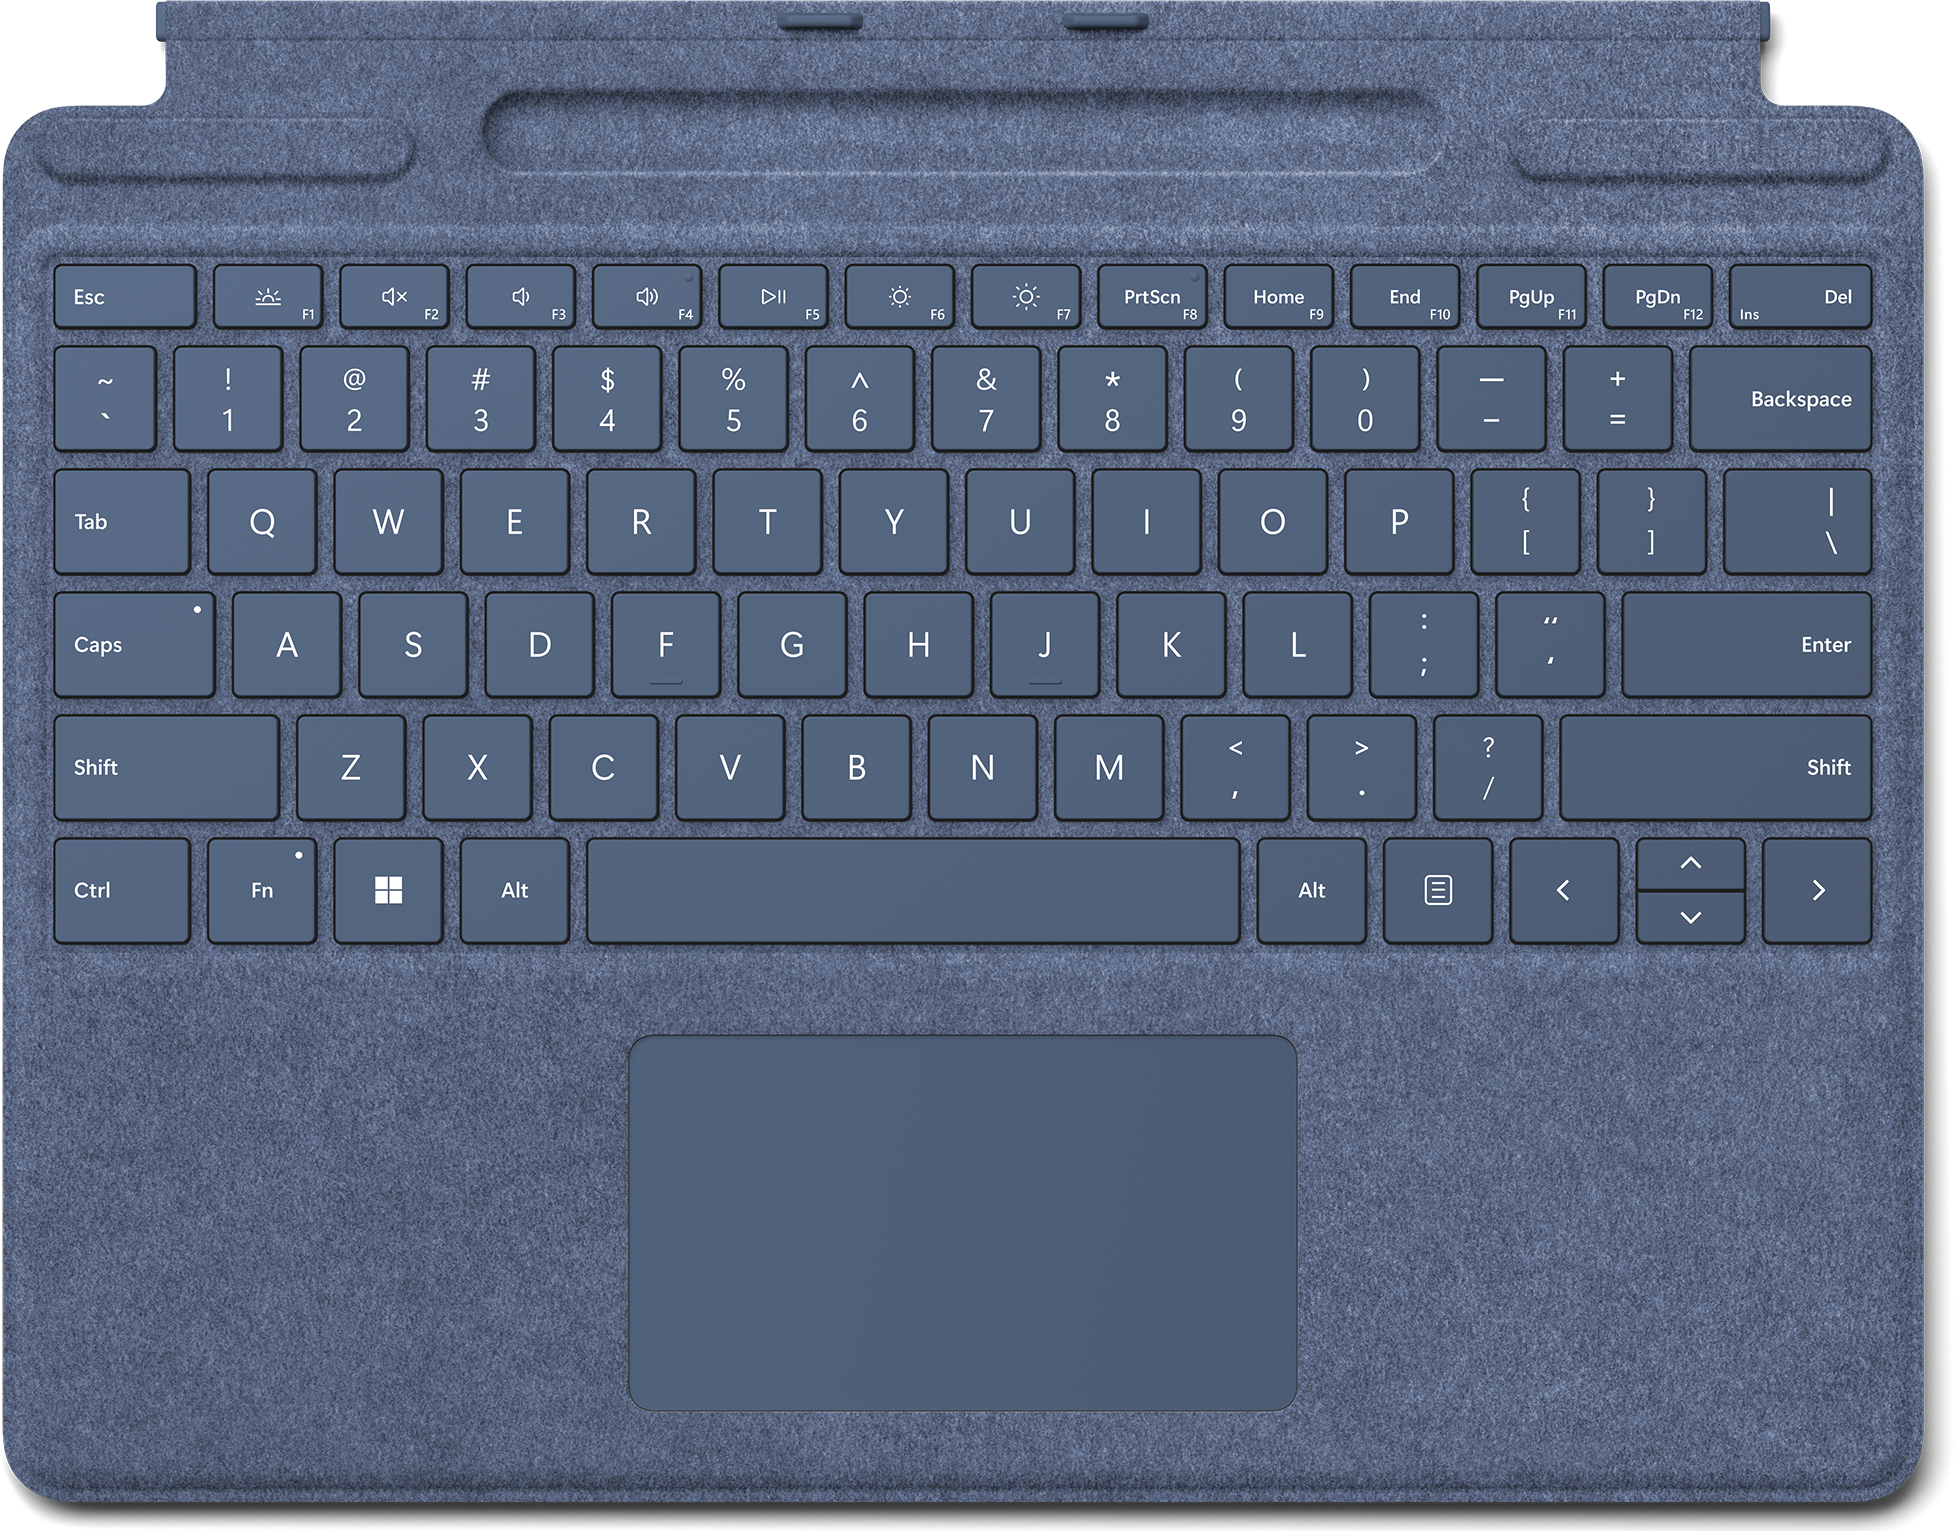 Geplooid Poort gewelddadig Koop Surface Pro Signature Keyboard - Cover met toetsen met  achtergrondverlichting | Microsoft Store Nederland